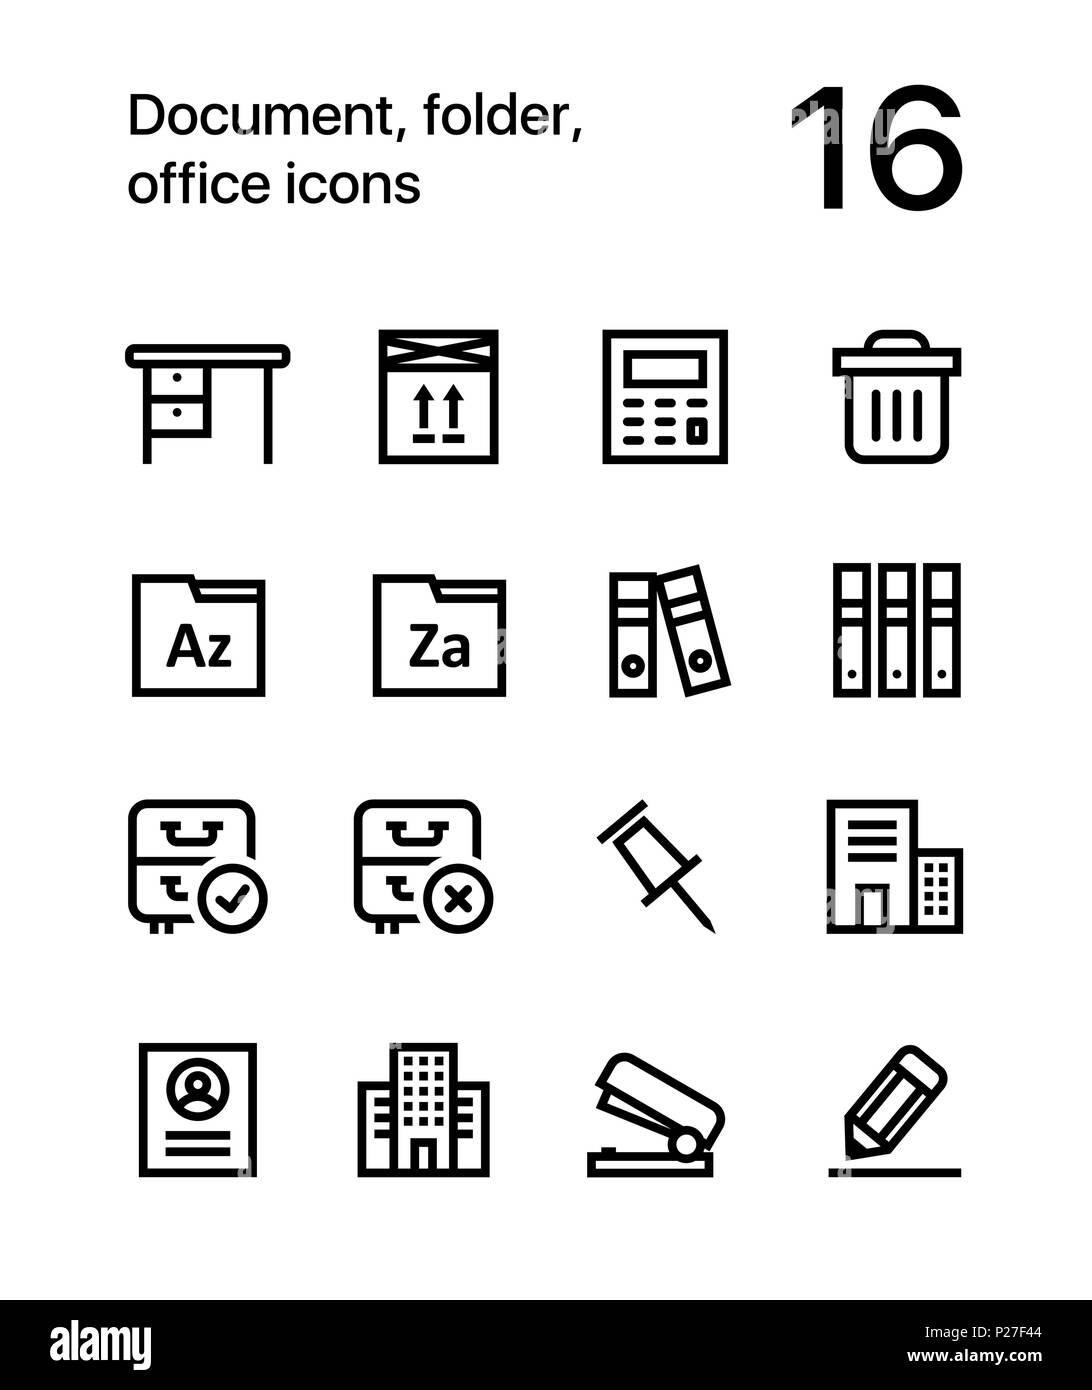 Le document, le dossier, les icônes de bureau et web design mobile pack 3 Illustration de Vecteur